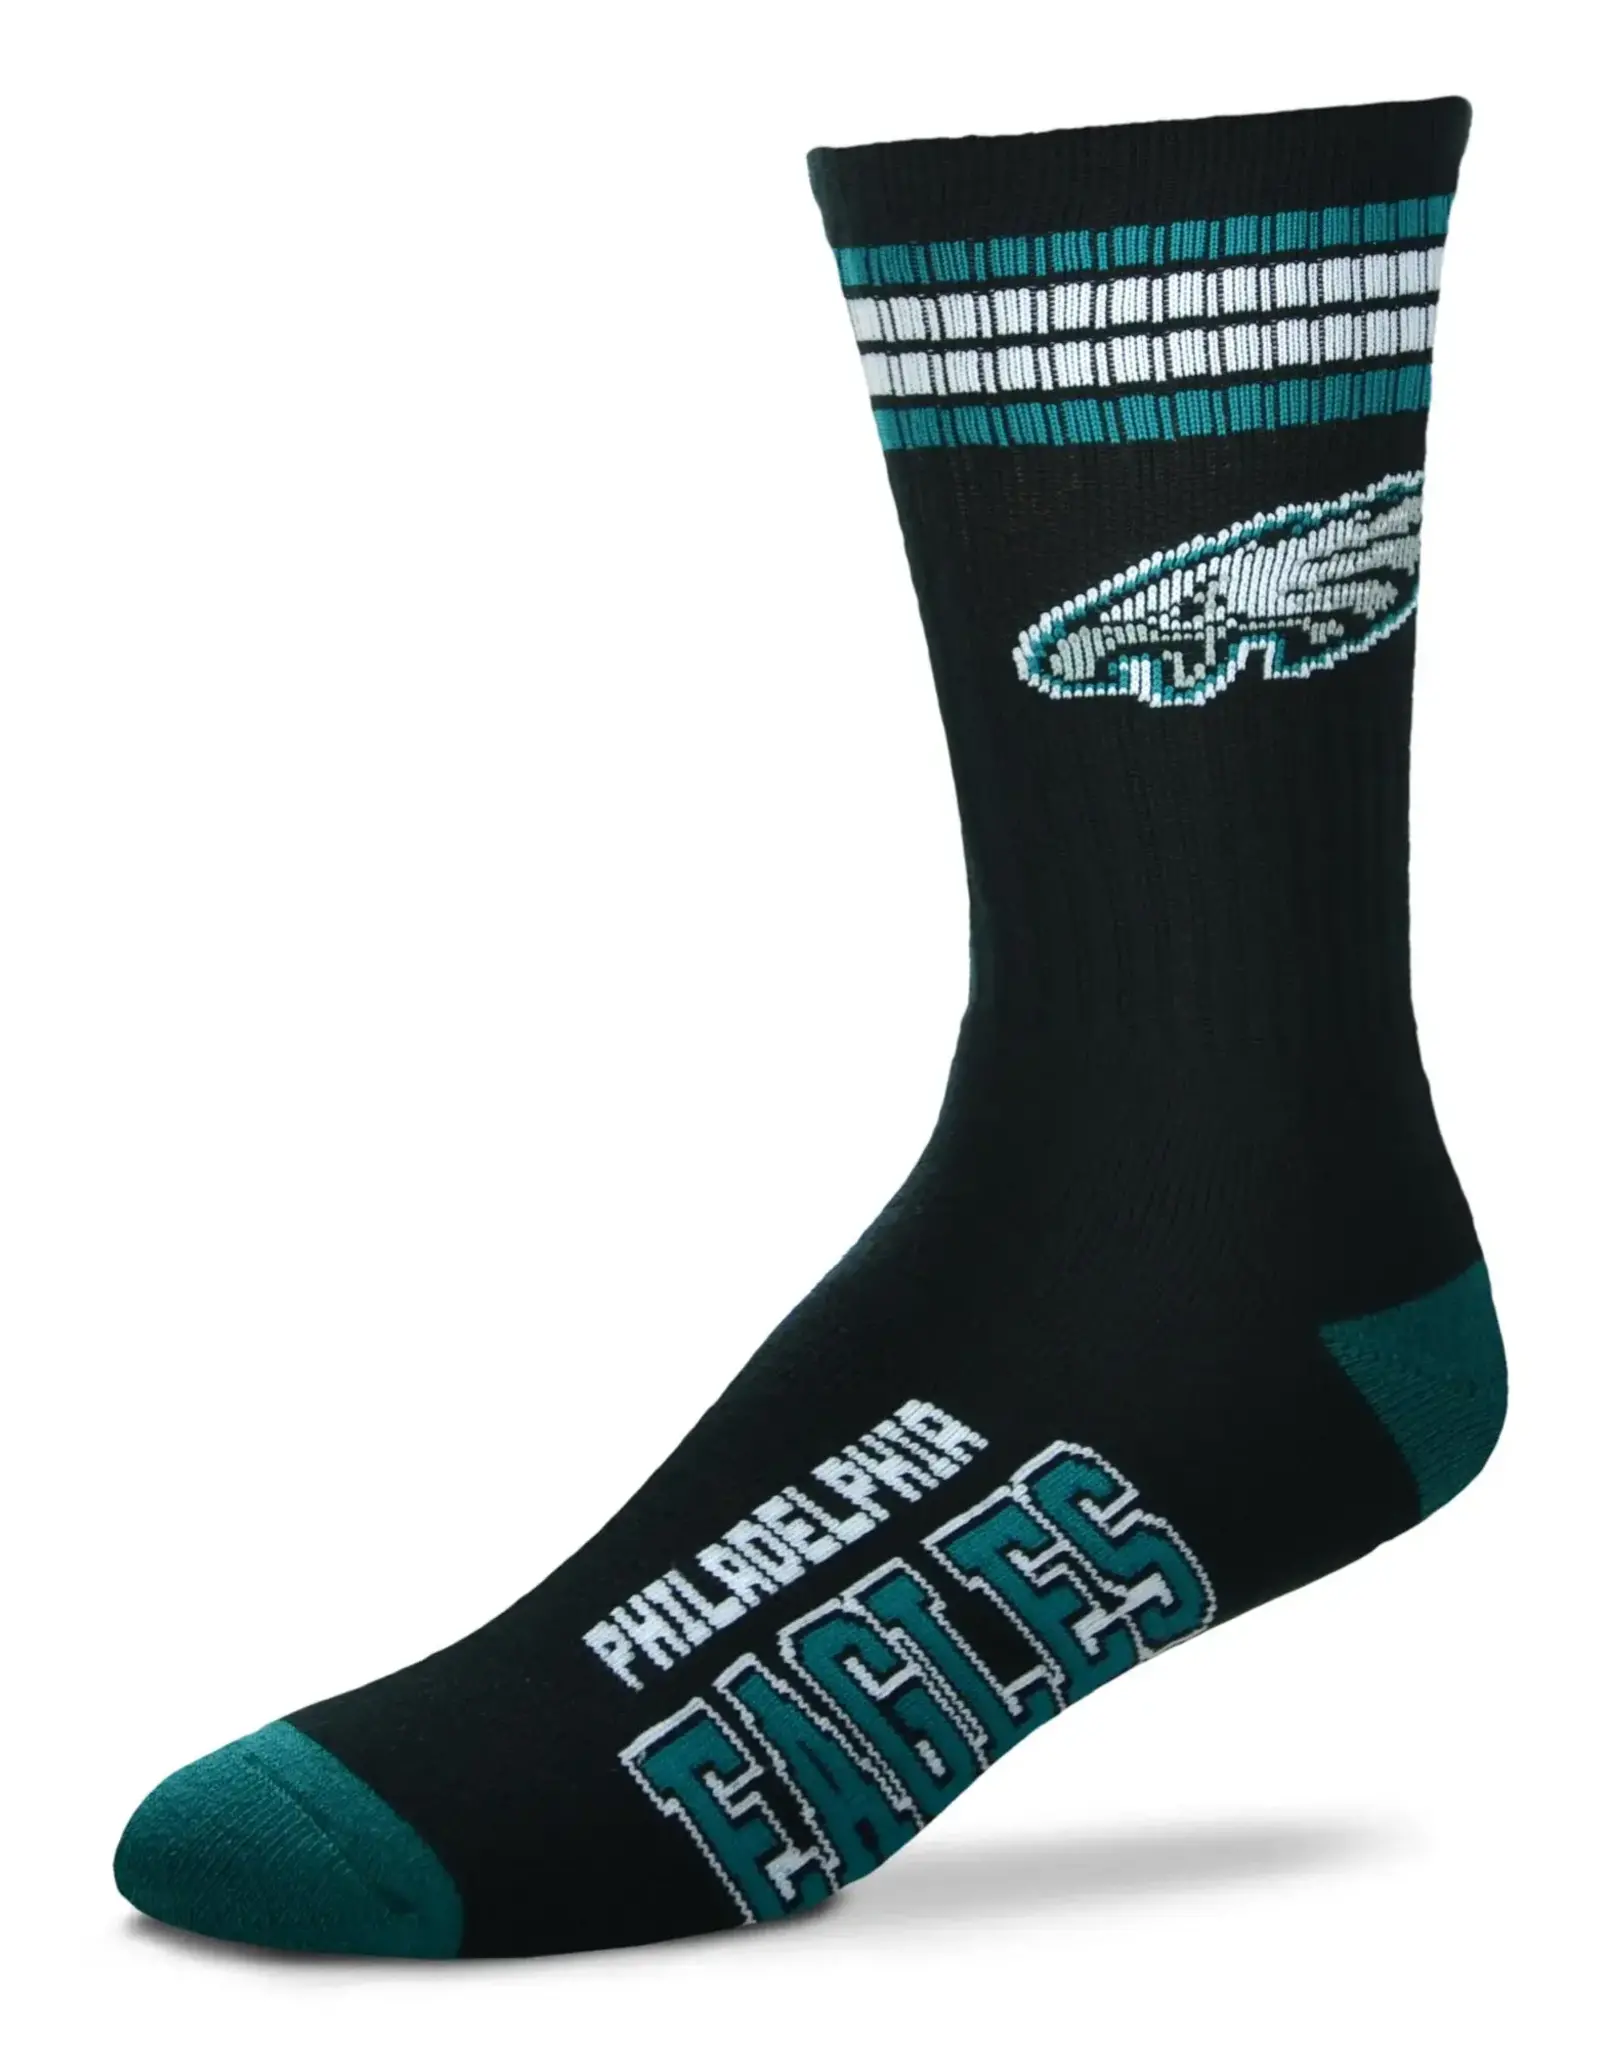 For Bare Feet Philadelphia Eagles Men's Deuce Crew Socks